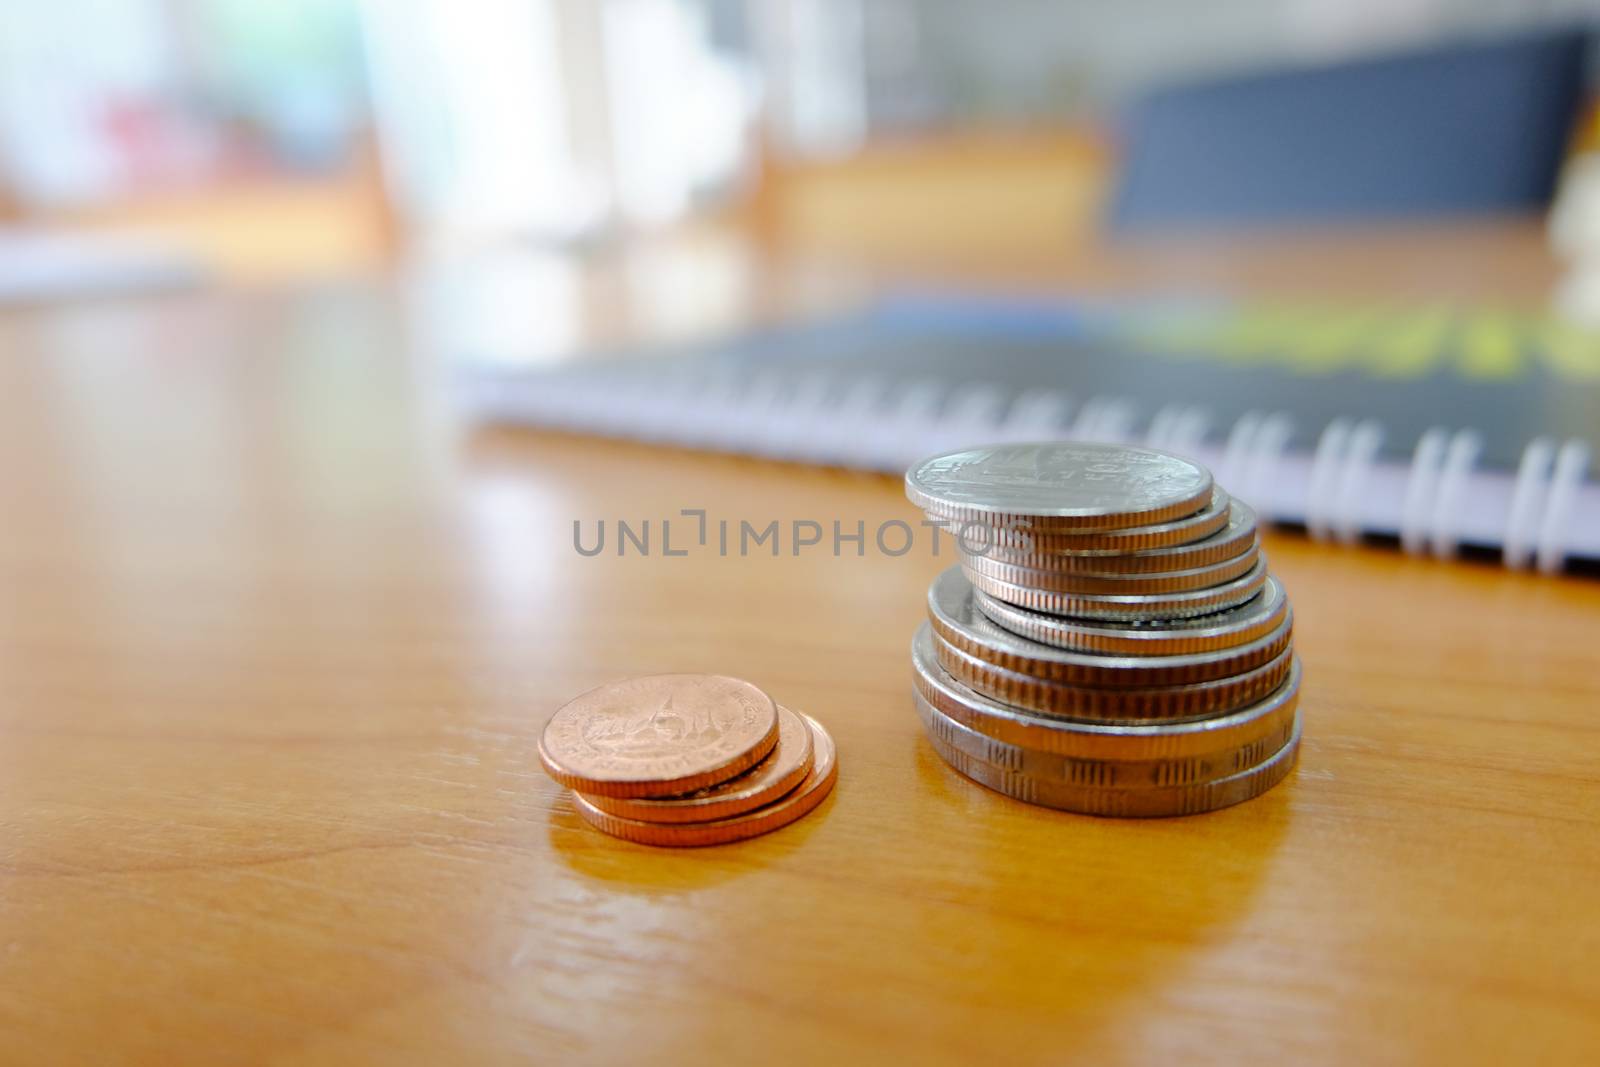 Baht coins on wooden floor by e22xua